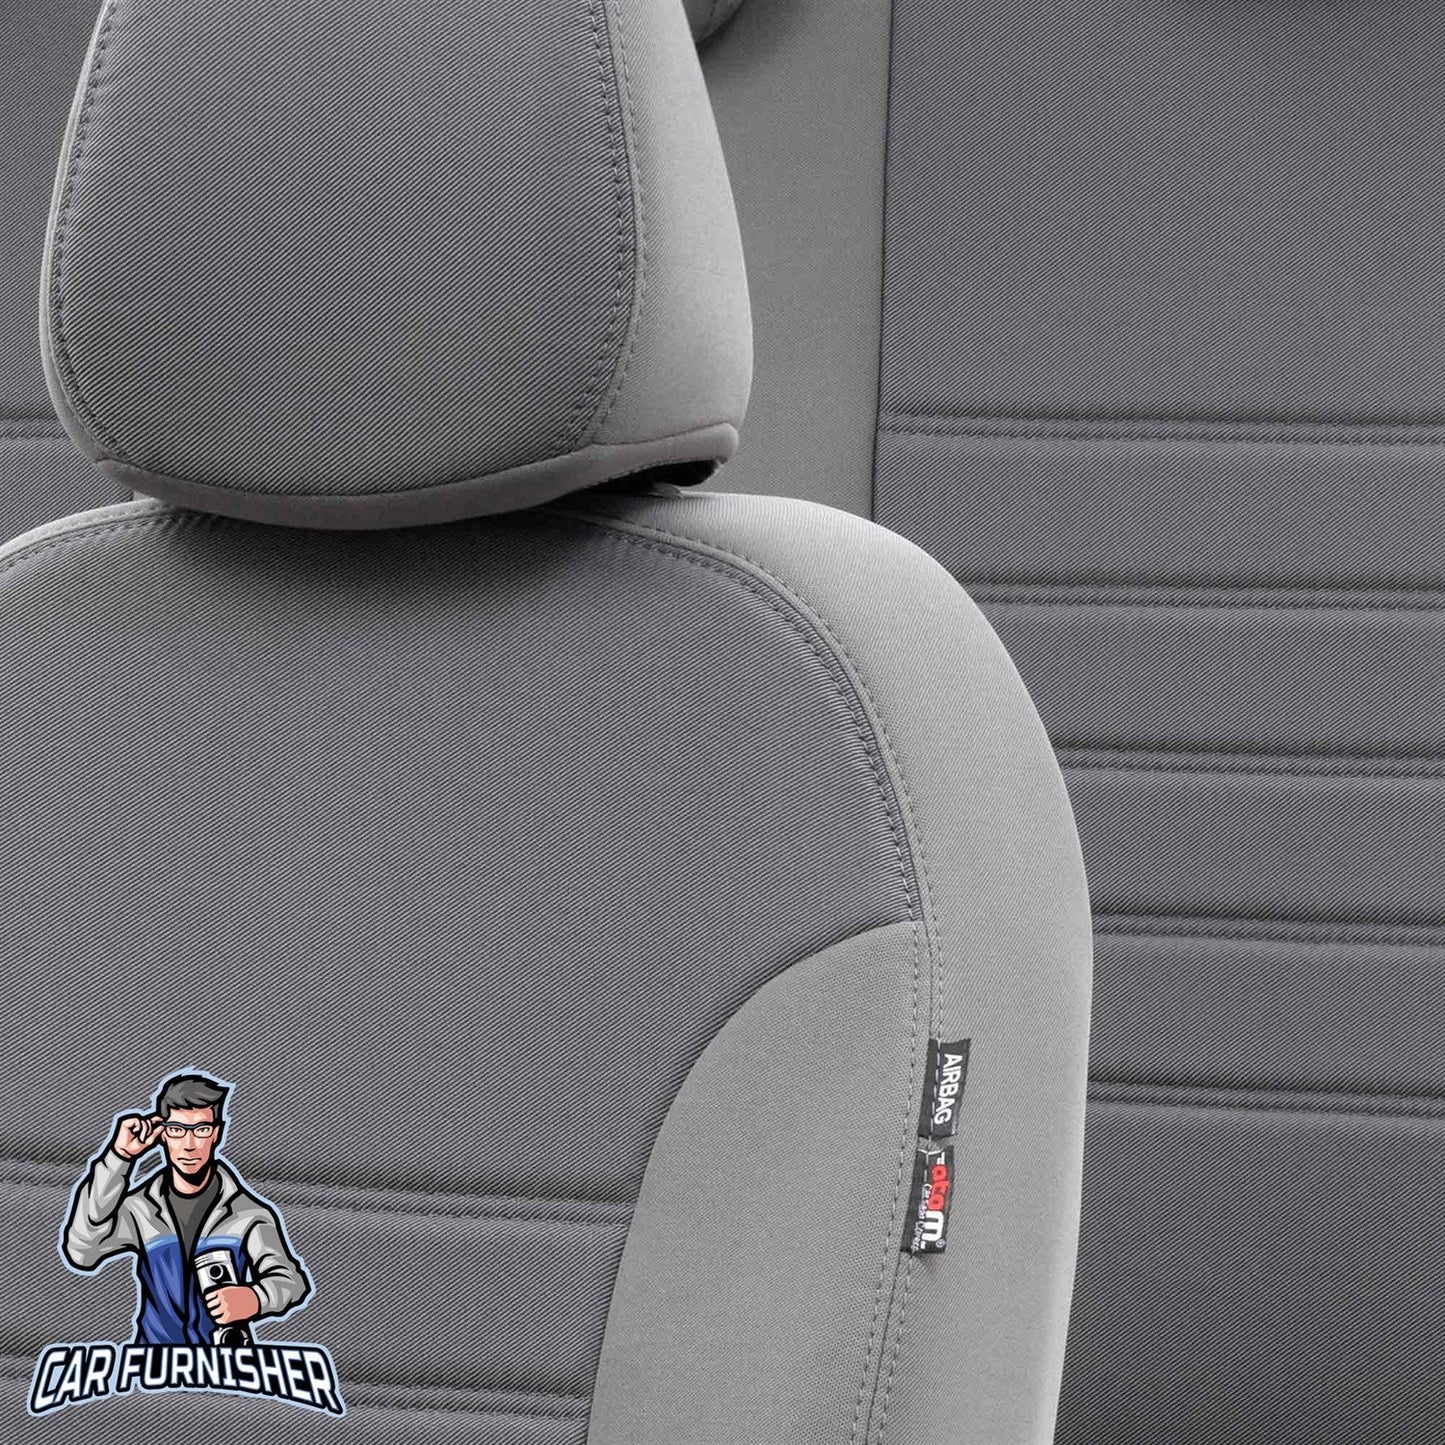 Volvo V50 Seat Cover Original Jacquard Design Gray Jacquard Fabric